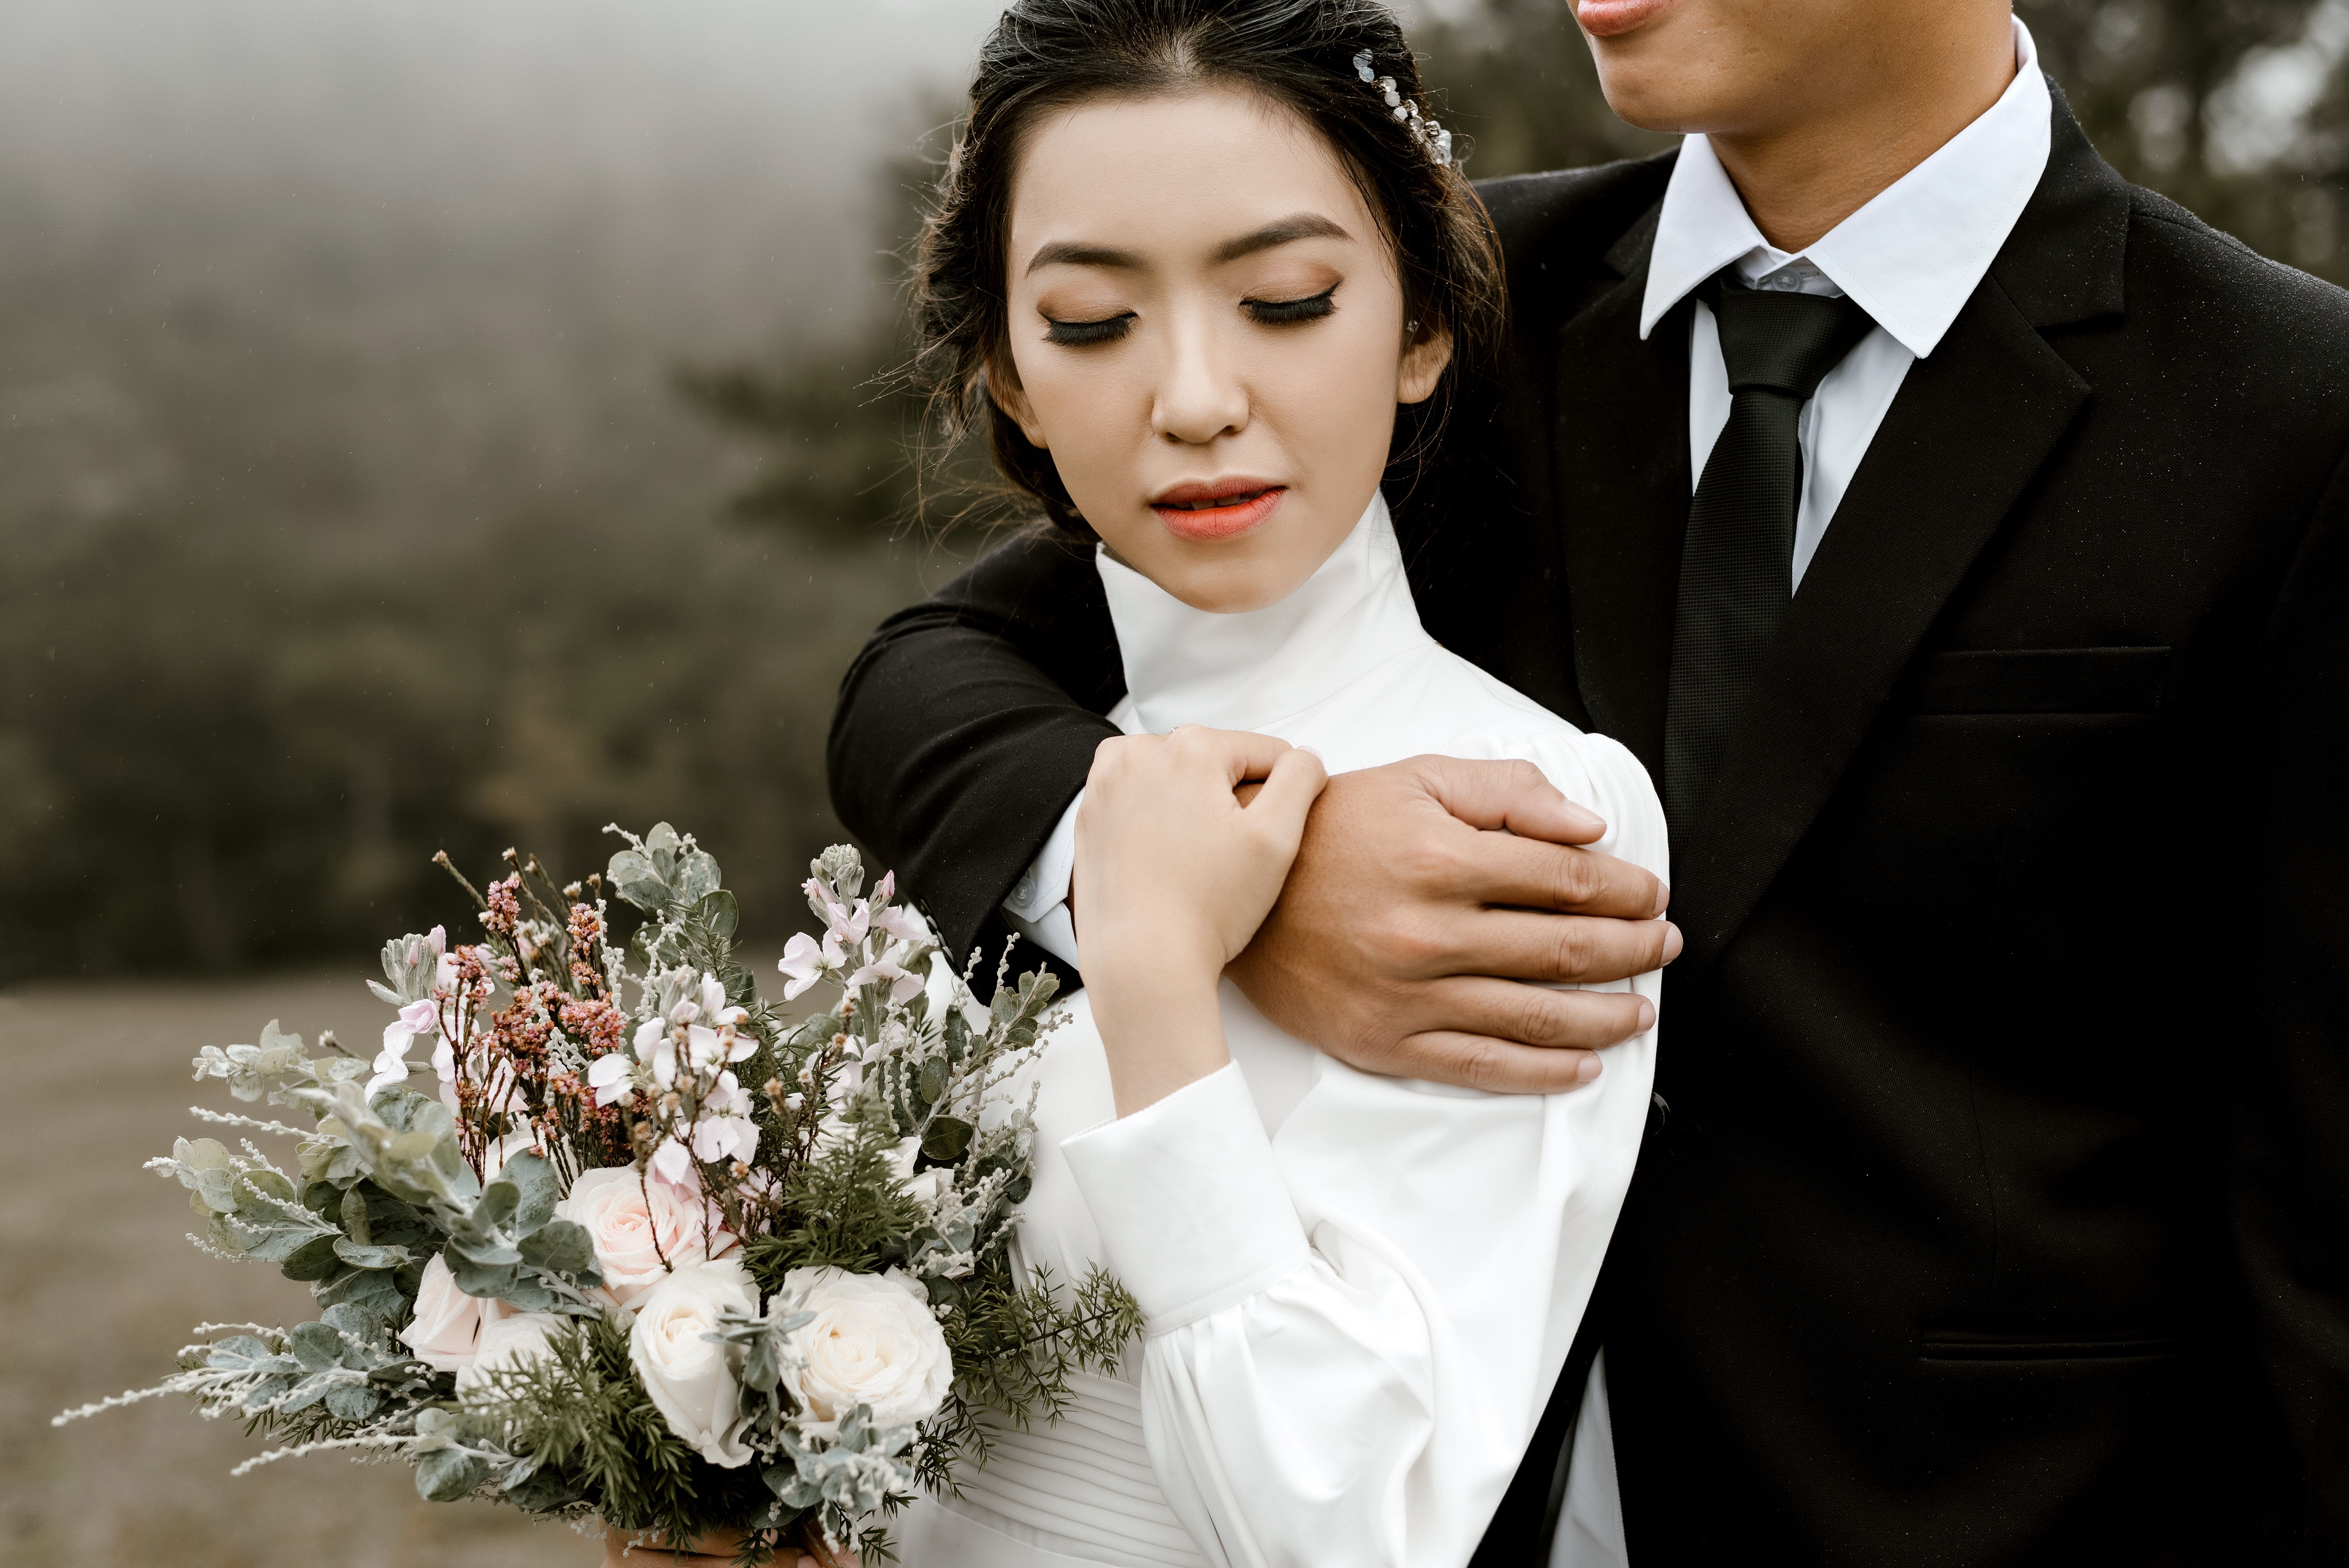 bouquet-bride-bride-and-groom-2959195.jpg